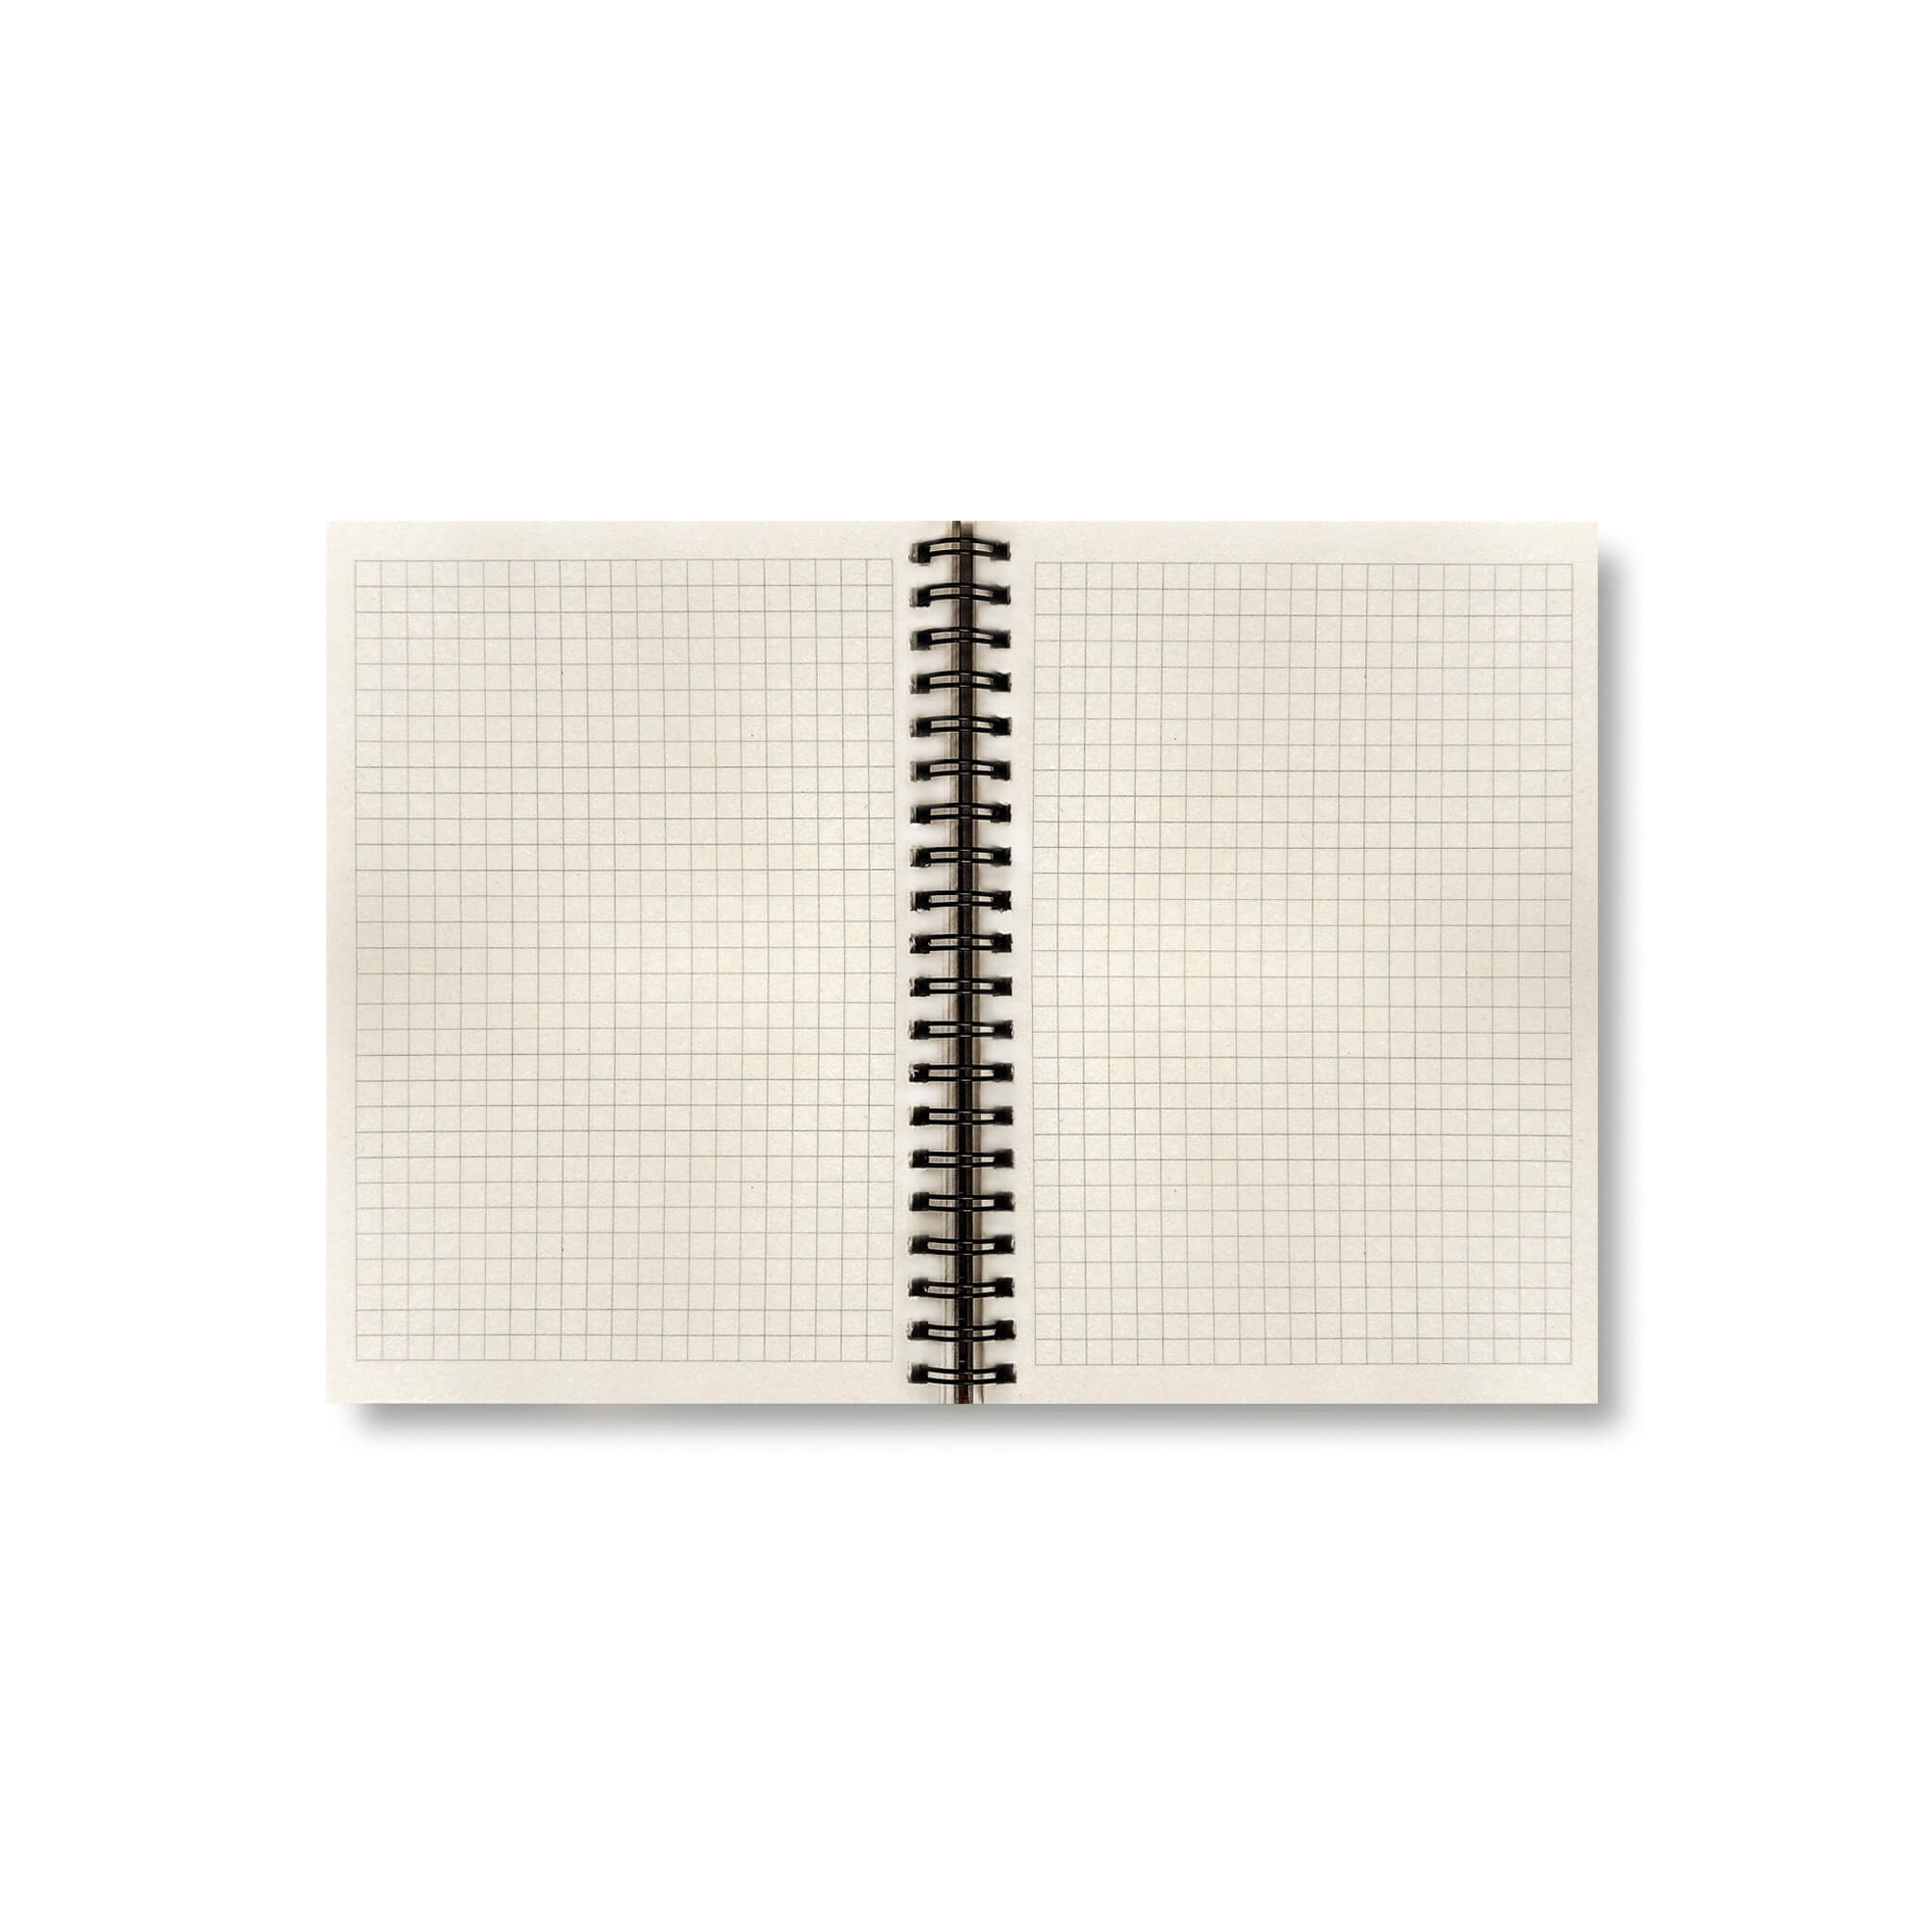 BOBO Zápisník, B6, čtverečkovaný, šedý